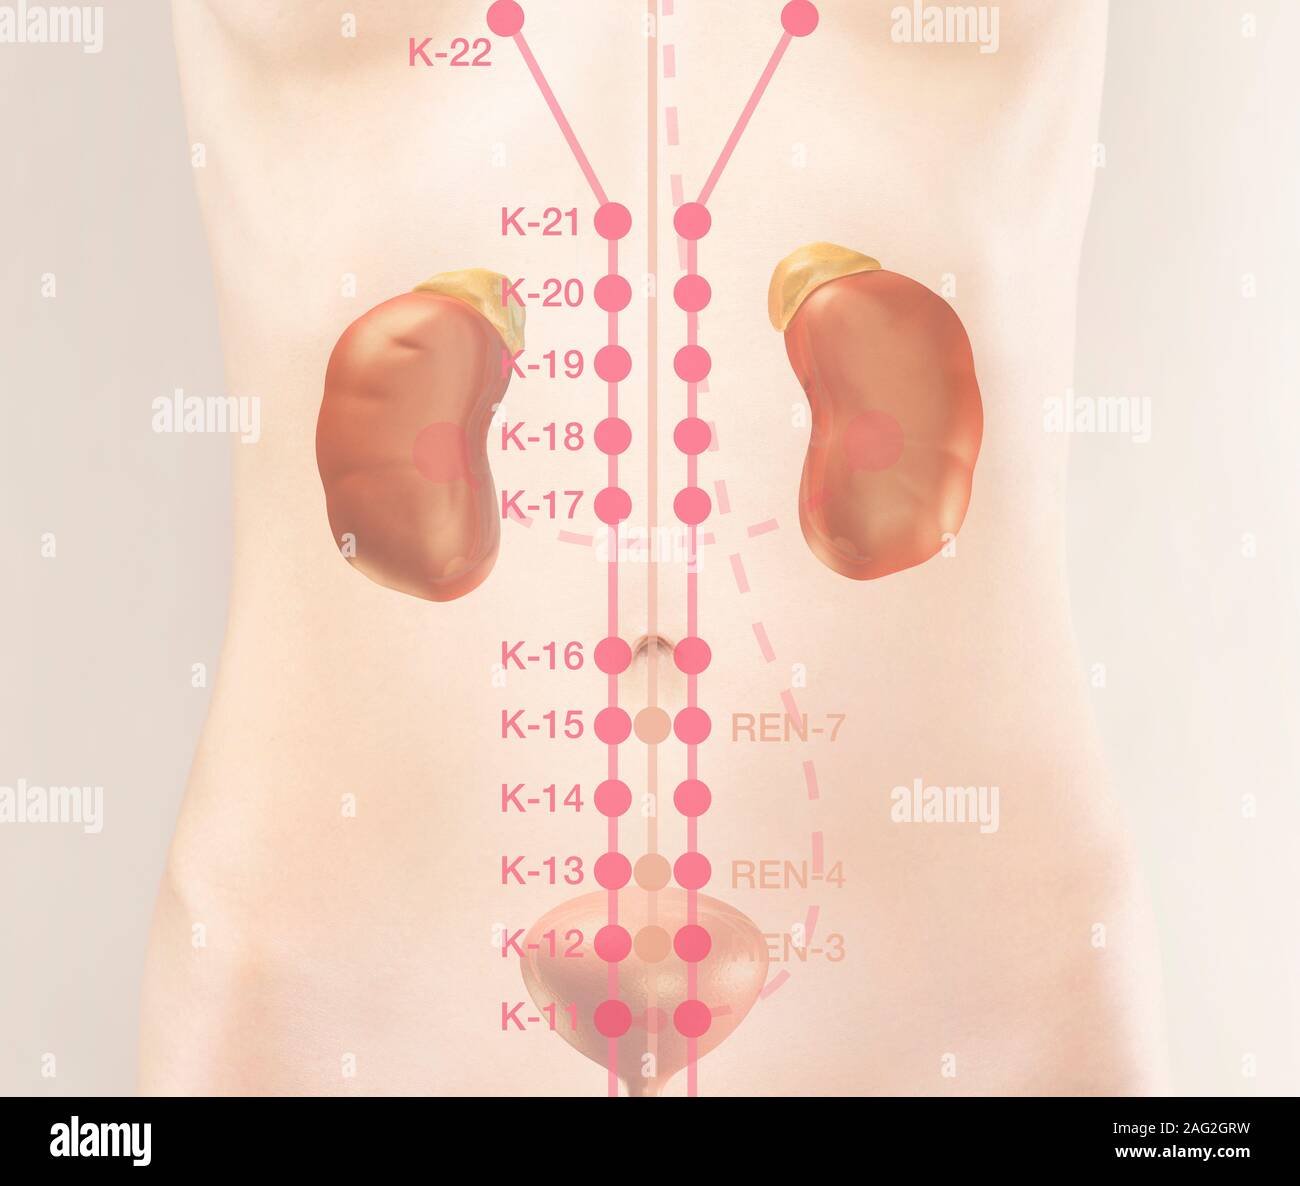 TCM fragmento de canal de riñón y Meridian puntos en el cuerpo humano. La medicina tradicional china ilustración de puntos de acupuntura, K-11, K-12, K-13, K Foto de stock